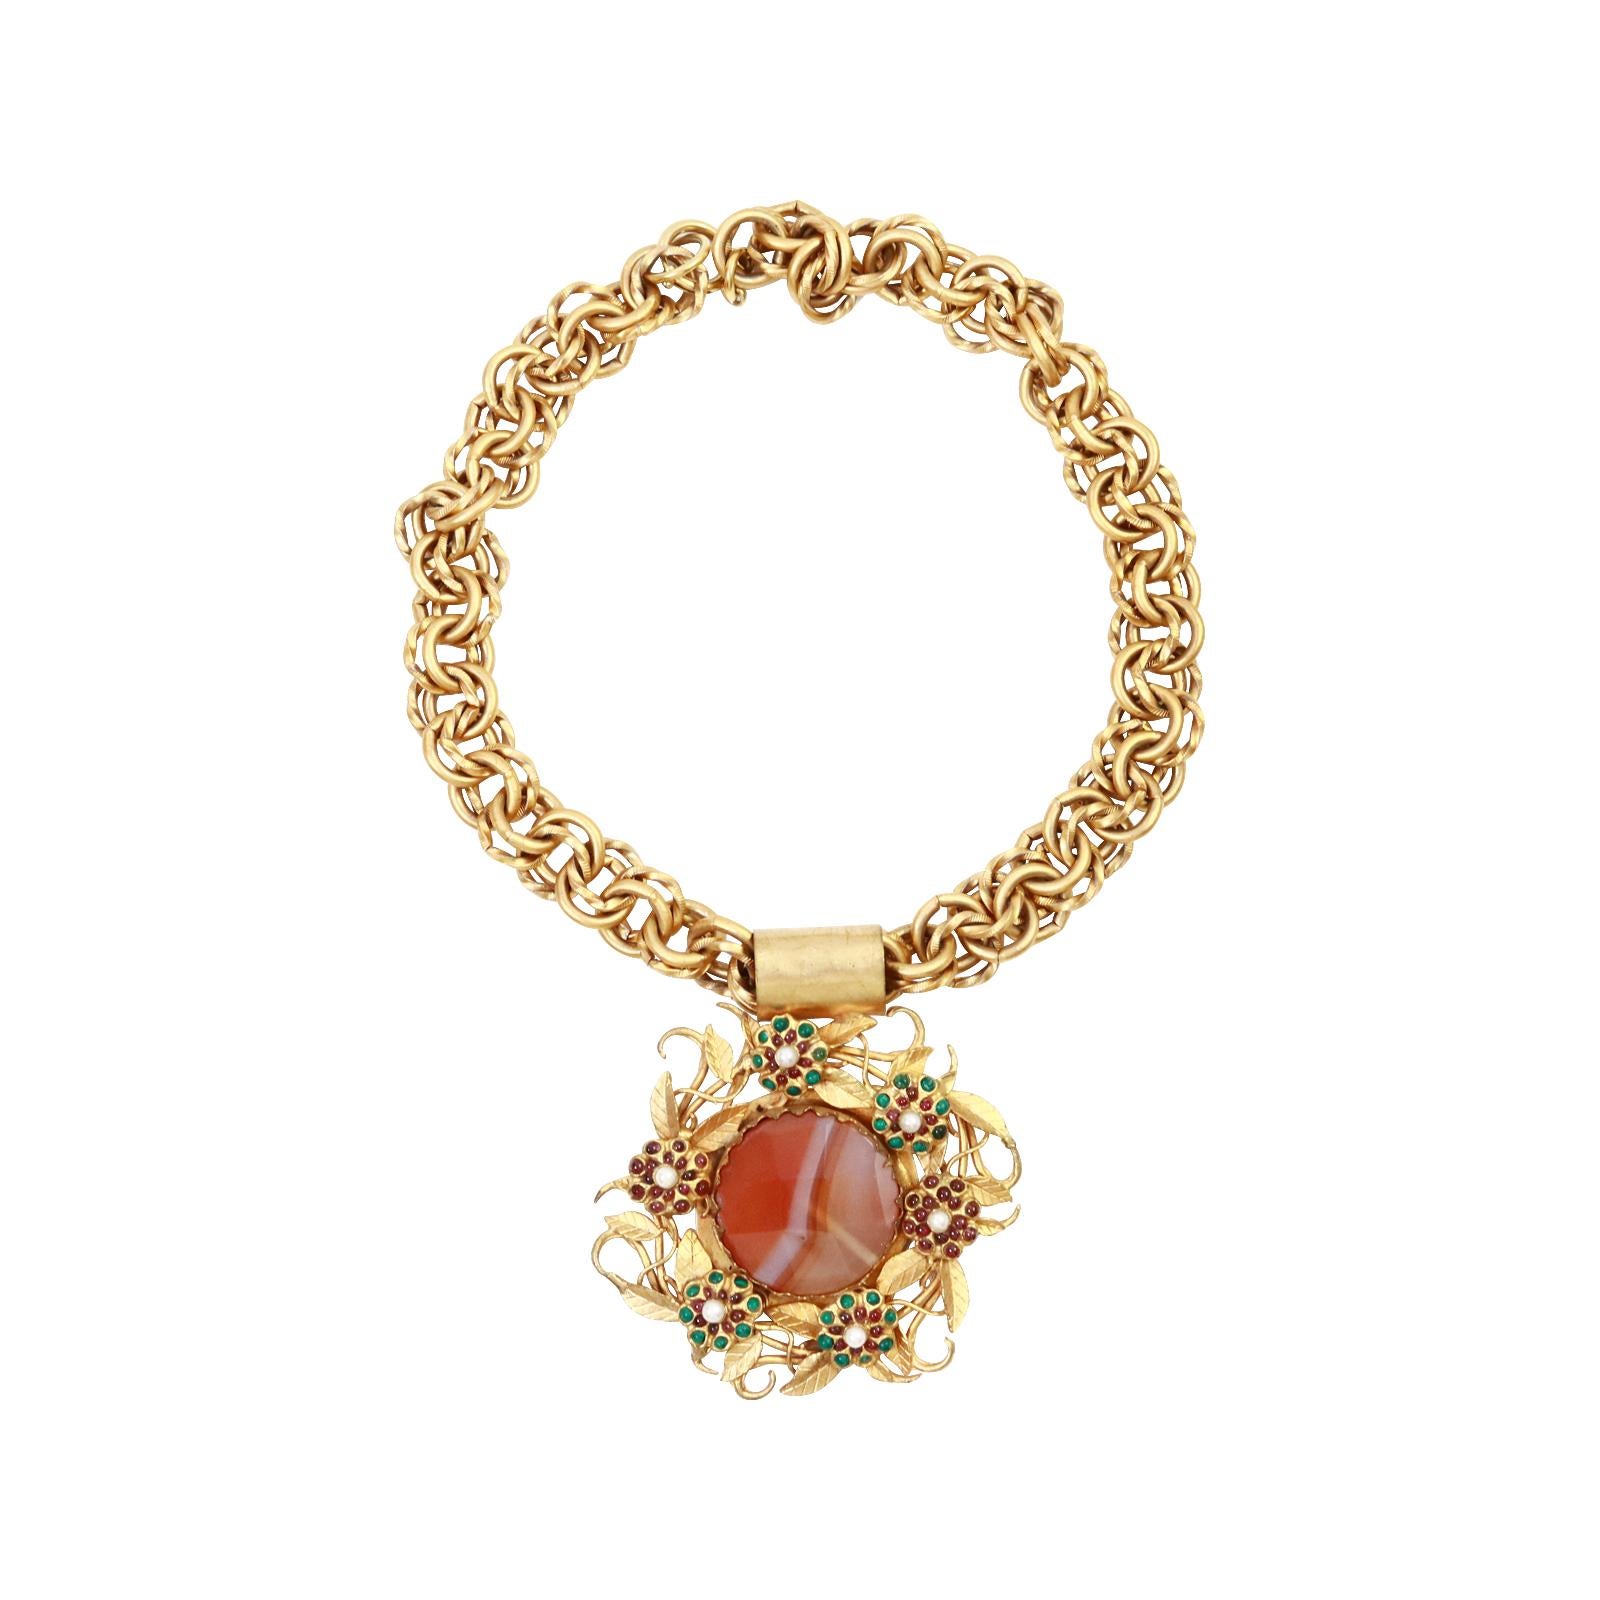 Vintage Rolled Gold mit Cabochons Halskette CIRCA 1960's. Wieder eine der schönsten Halsketten, die ich in meiner Sammlung habe. Wenn man die Arbeit an dieser etwa 60 Jahre alten Halskette betrachtet, ist sie atemberaubend. Die kleinen Blüten sitzen